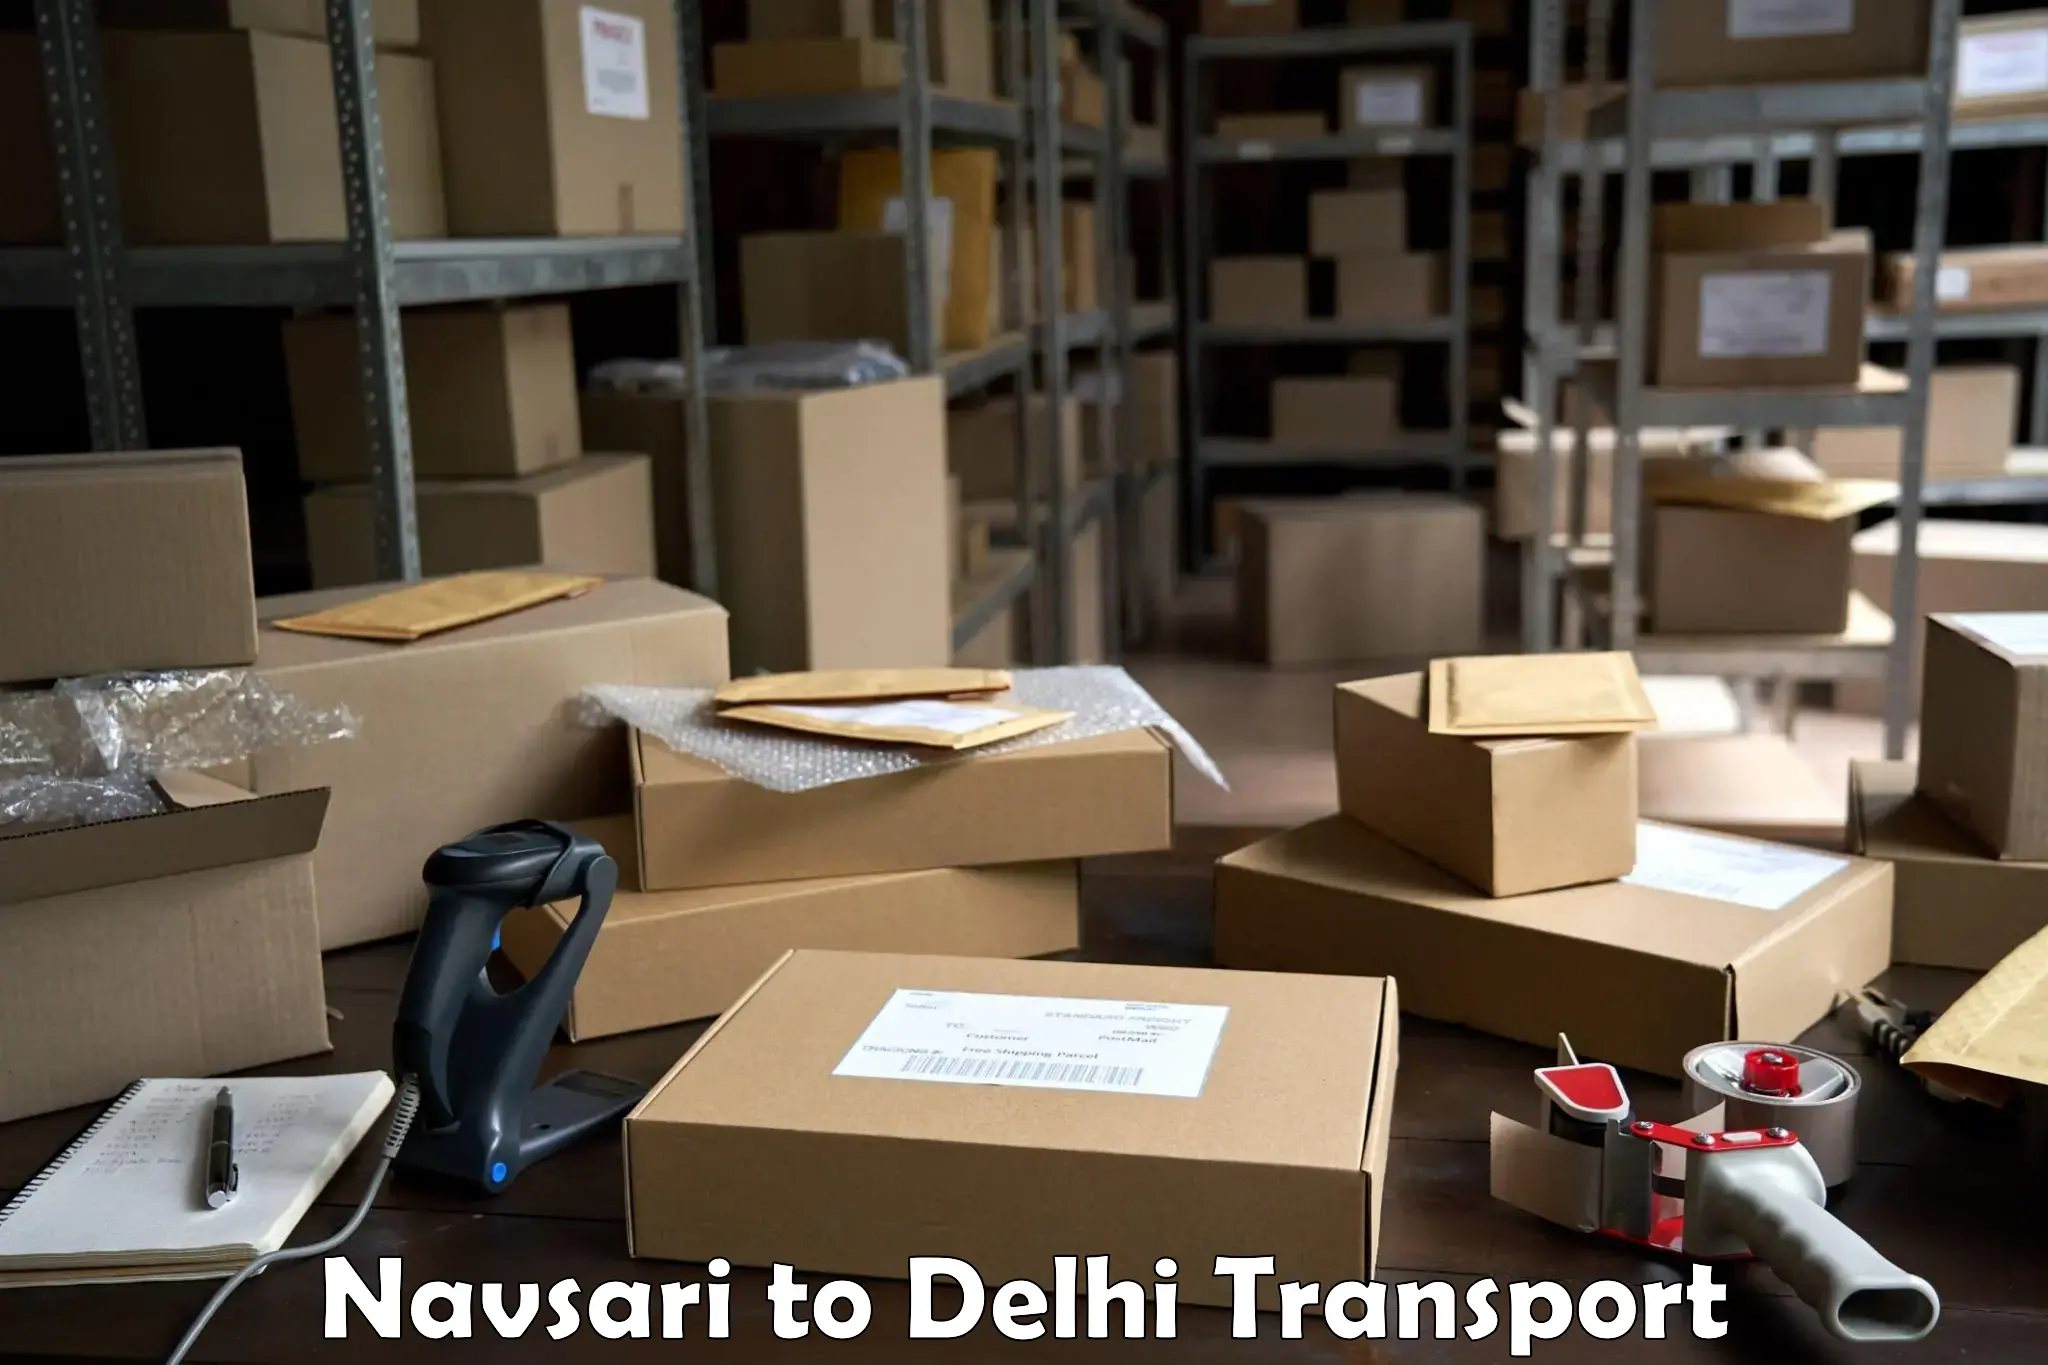 Bike shipping service Navsari to Delhi